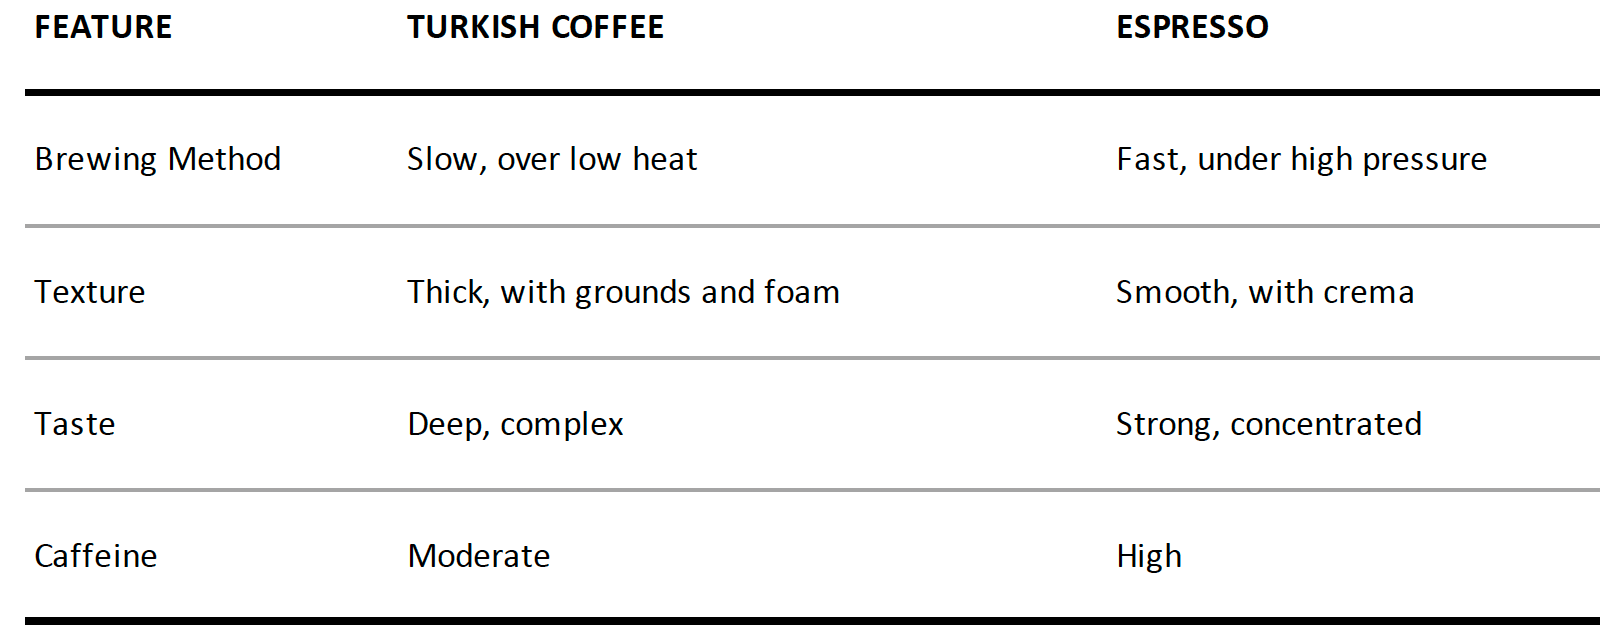 Türk Kahvesi vs Espresso